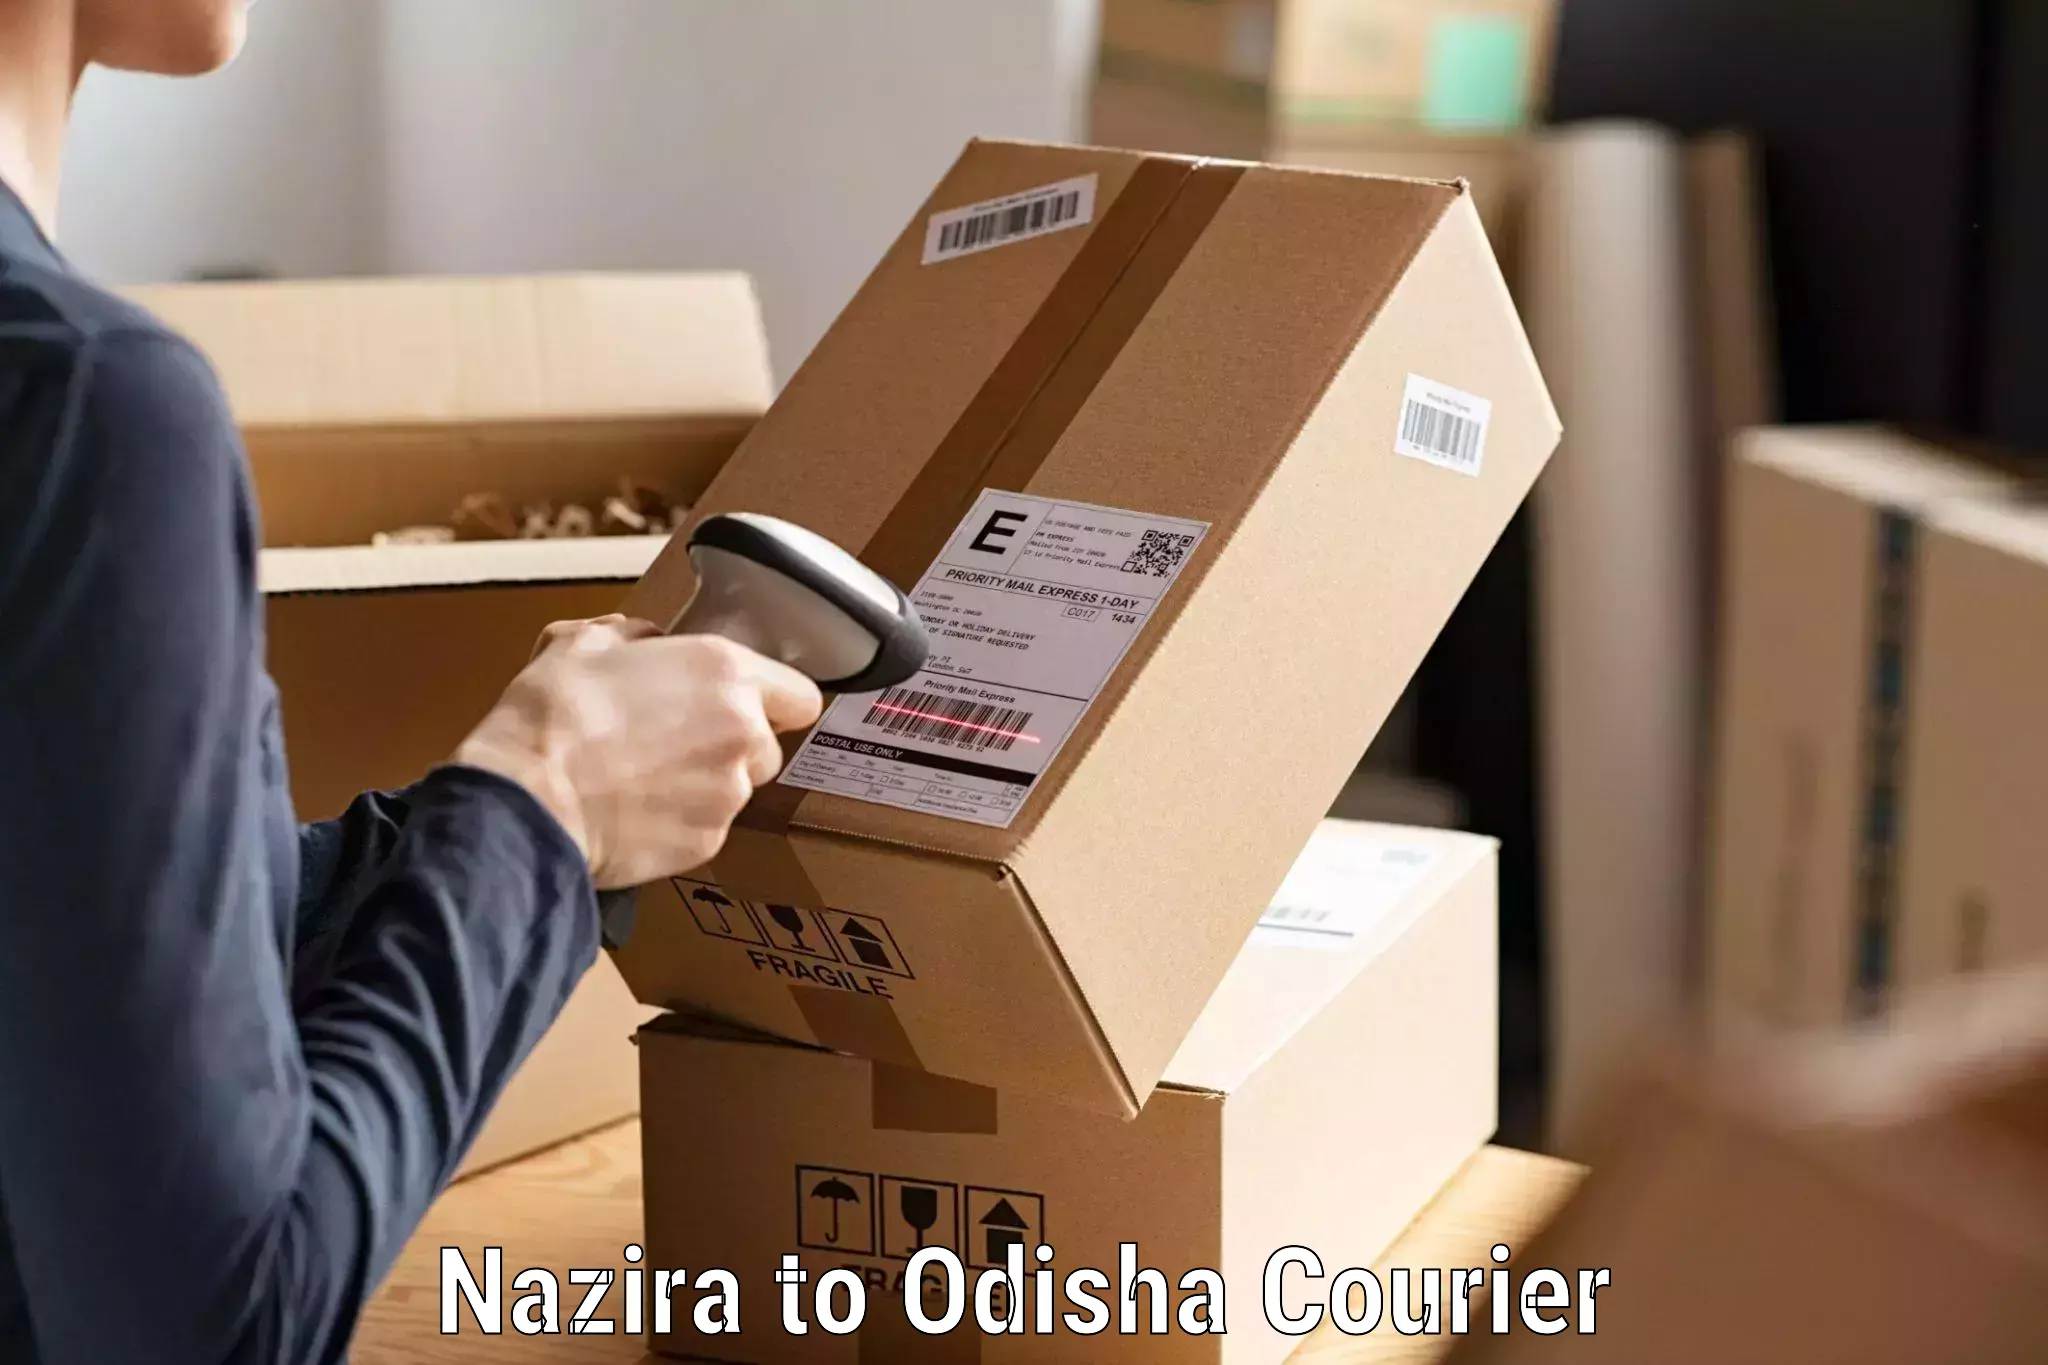 Express logistics providers Nazira to Gunupur